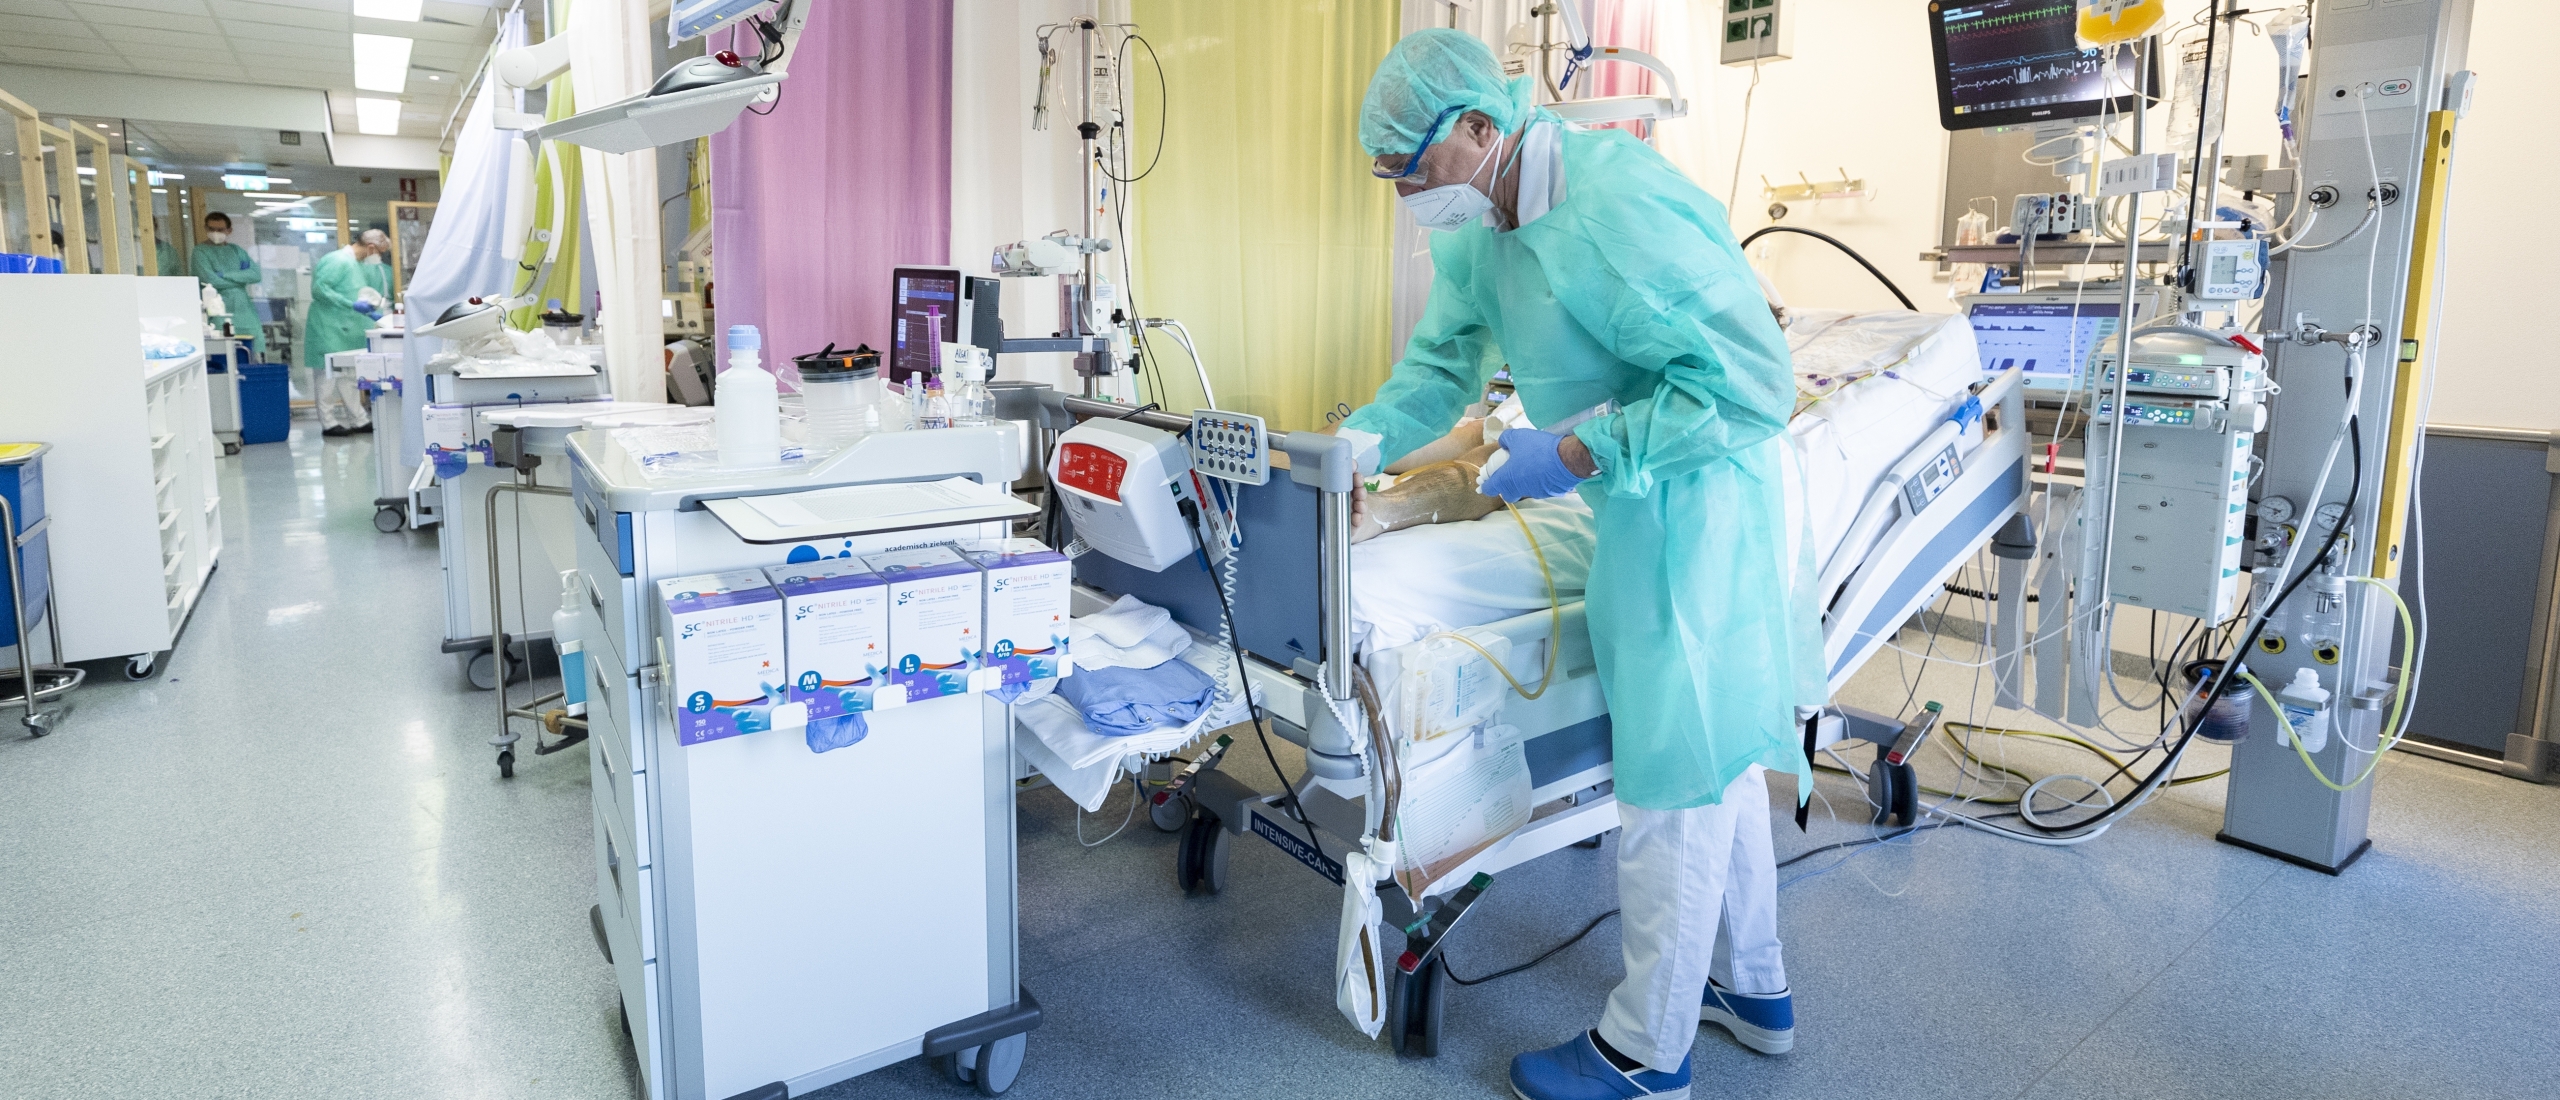 Aantal coronapatiënten in ziekenhuizen daalt snel